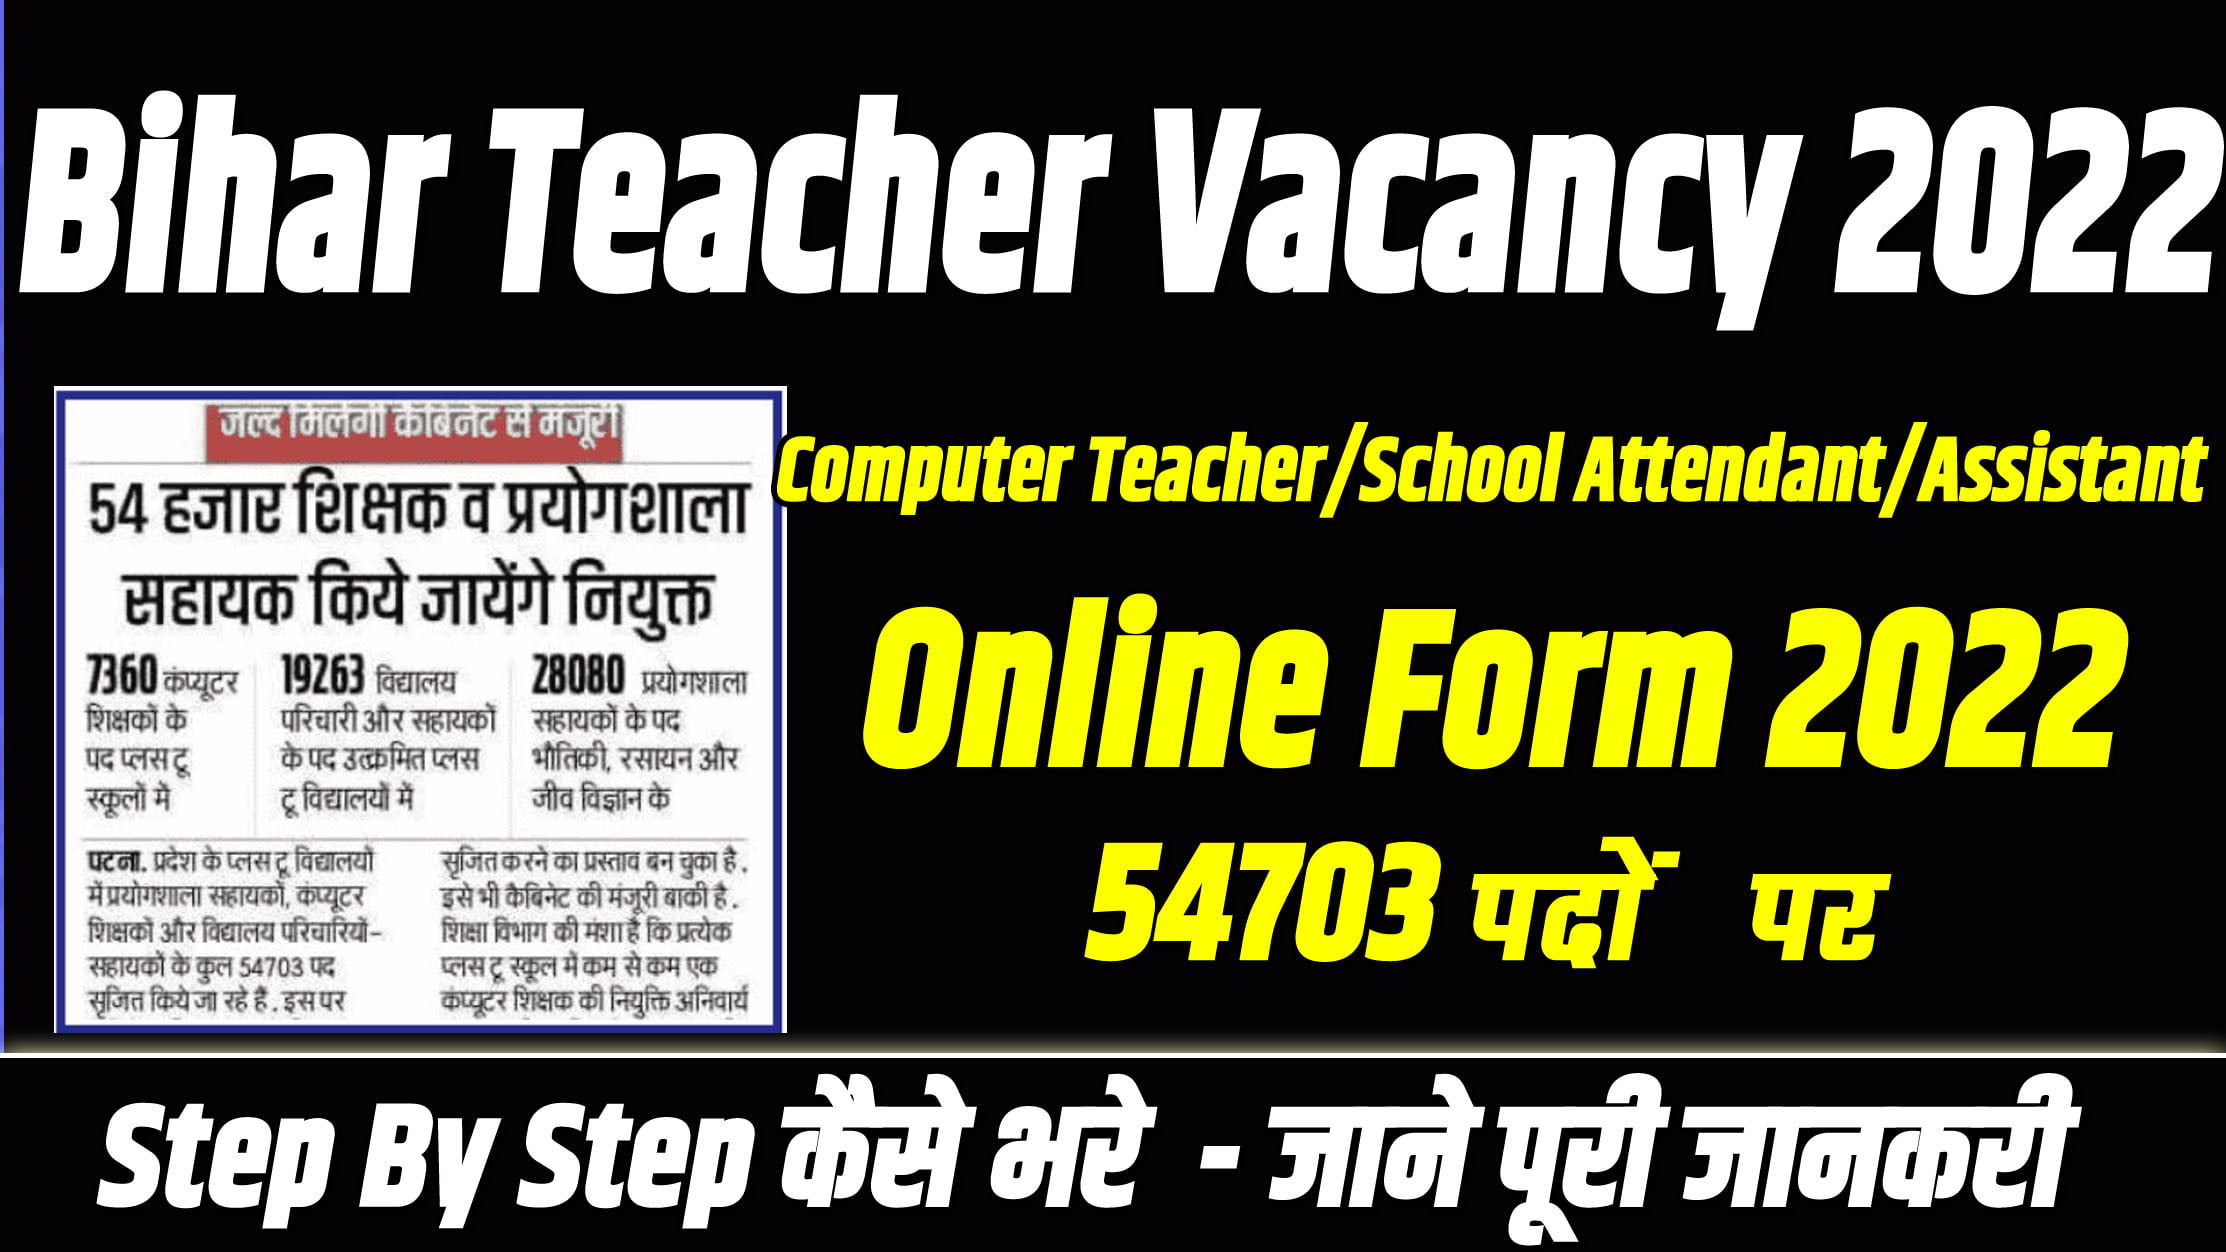 Bihar Teacher Vacancy 2022